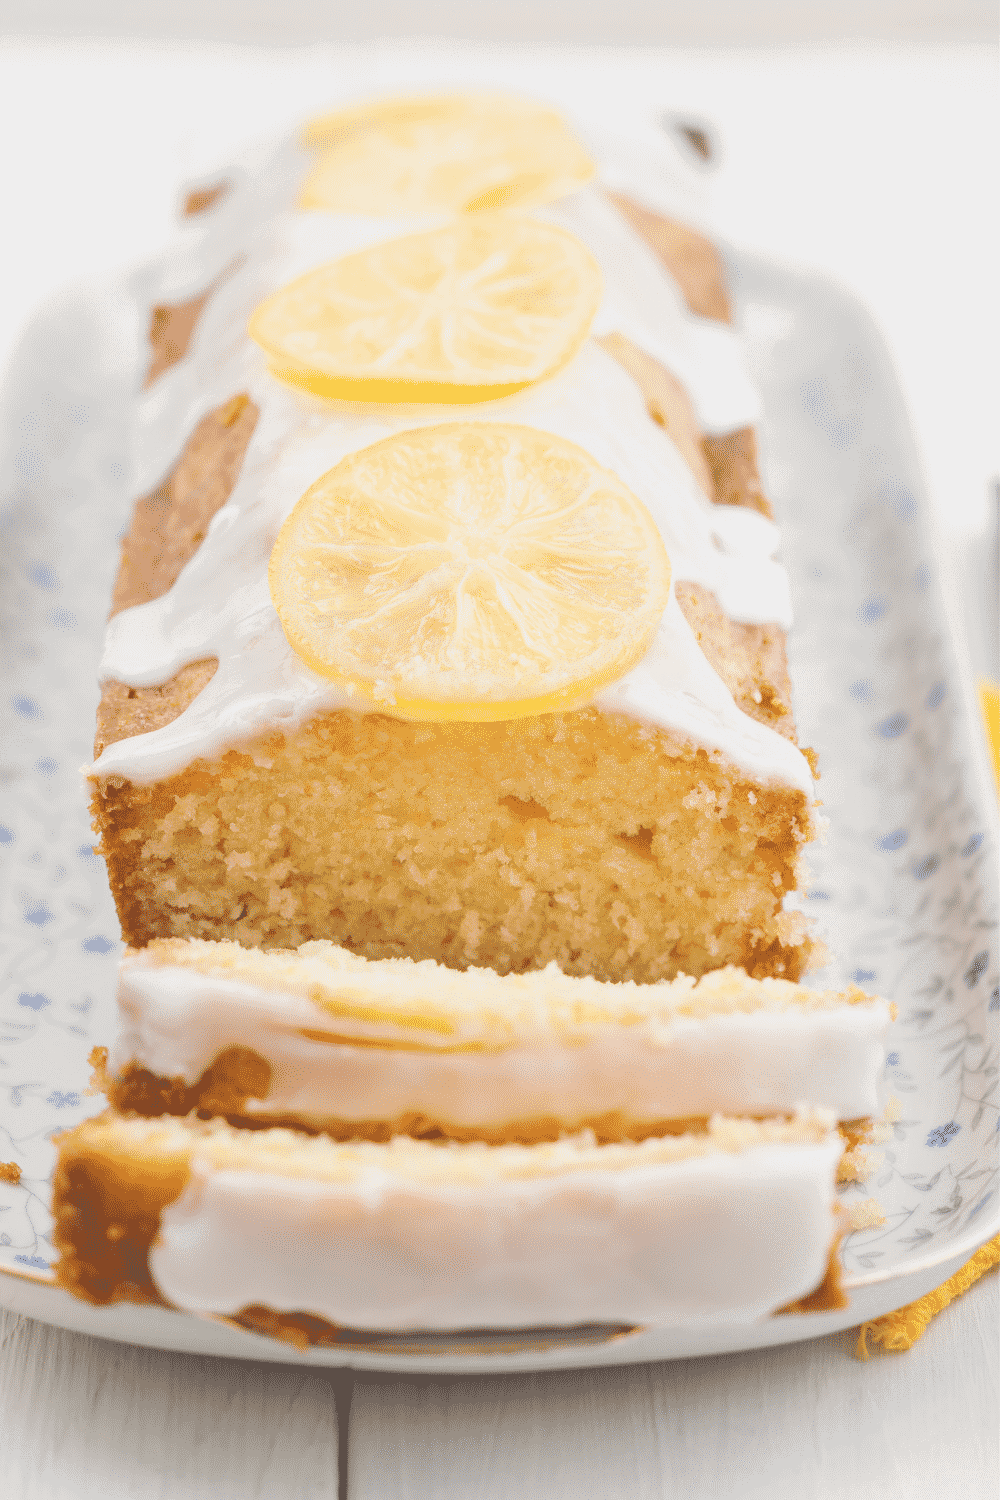 Ina Garten Lemon Cake Instructions